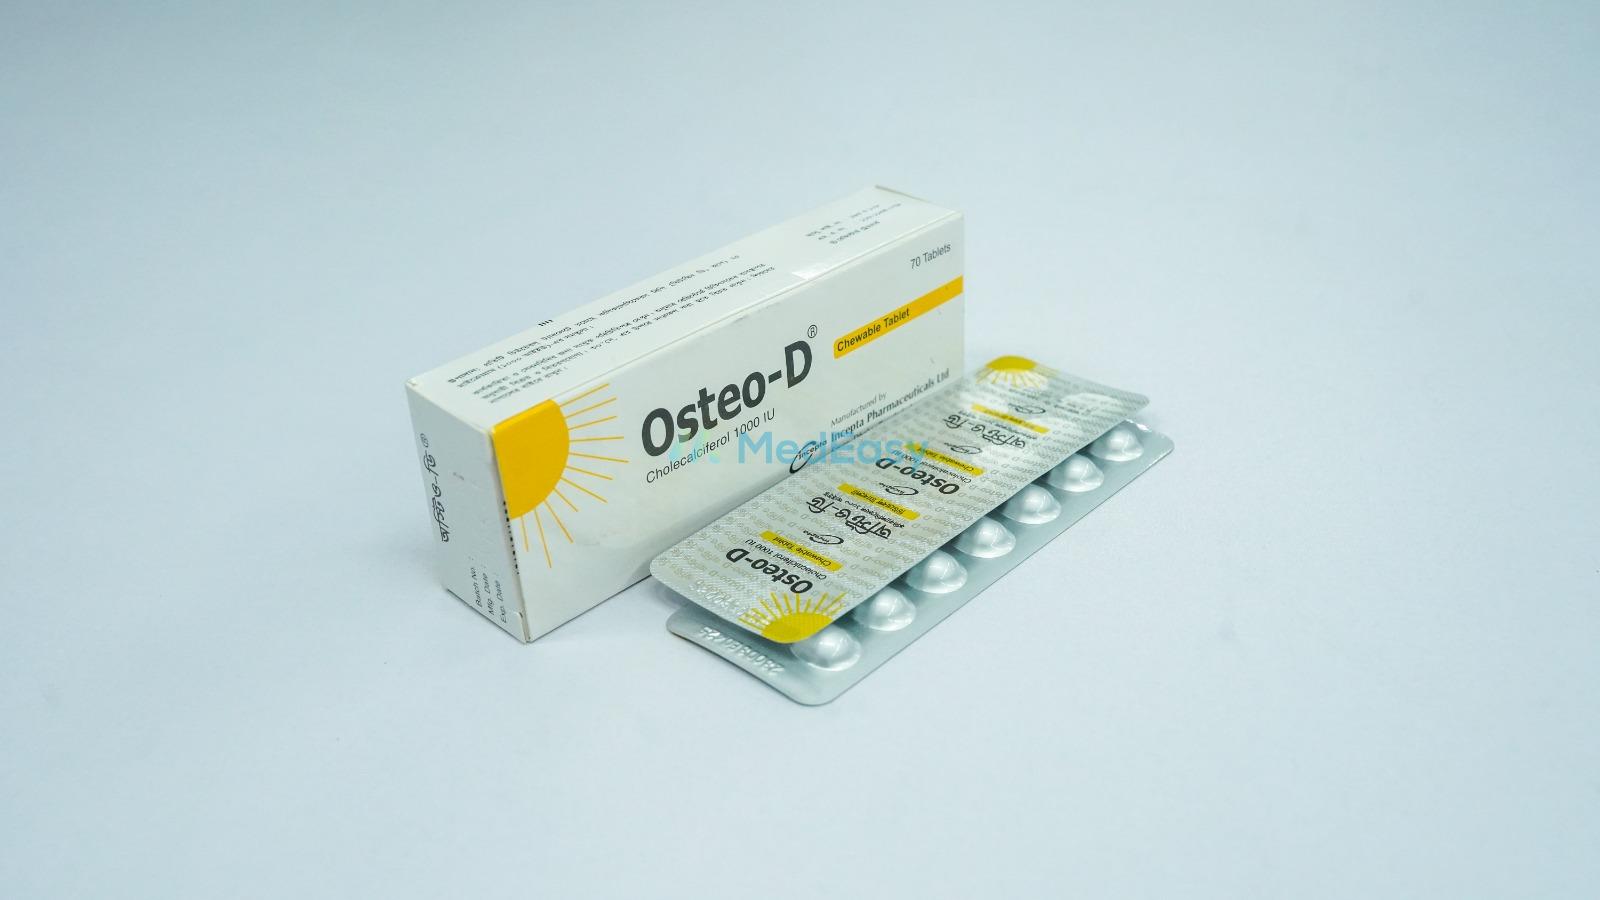 Osteo-D